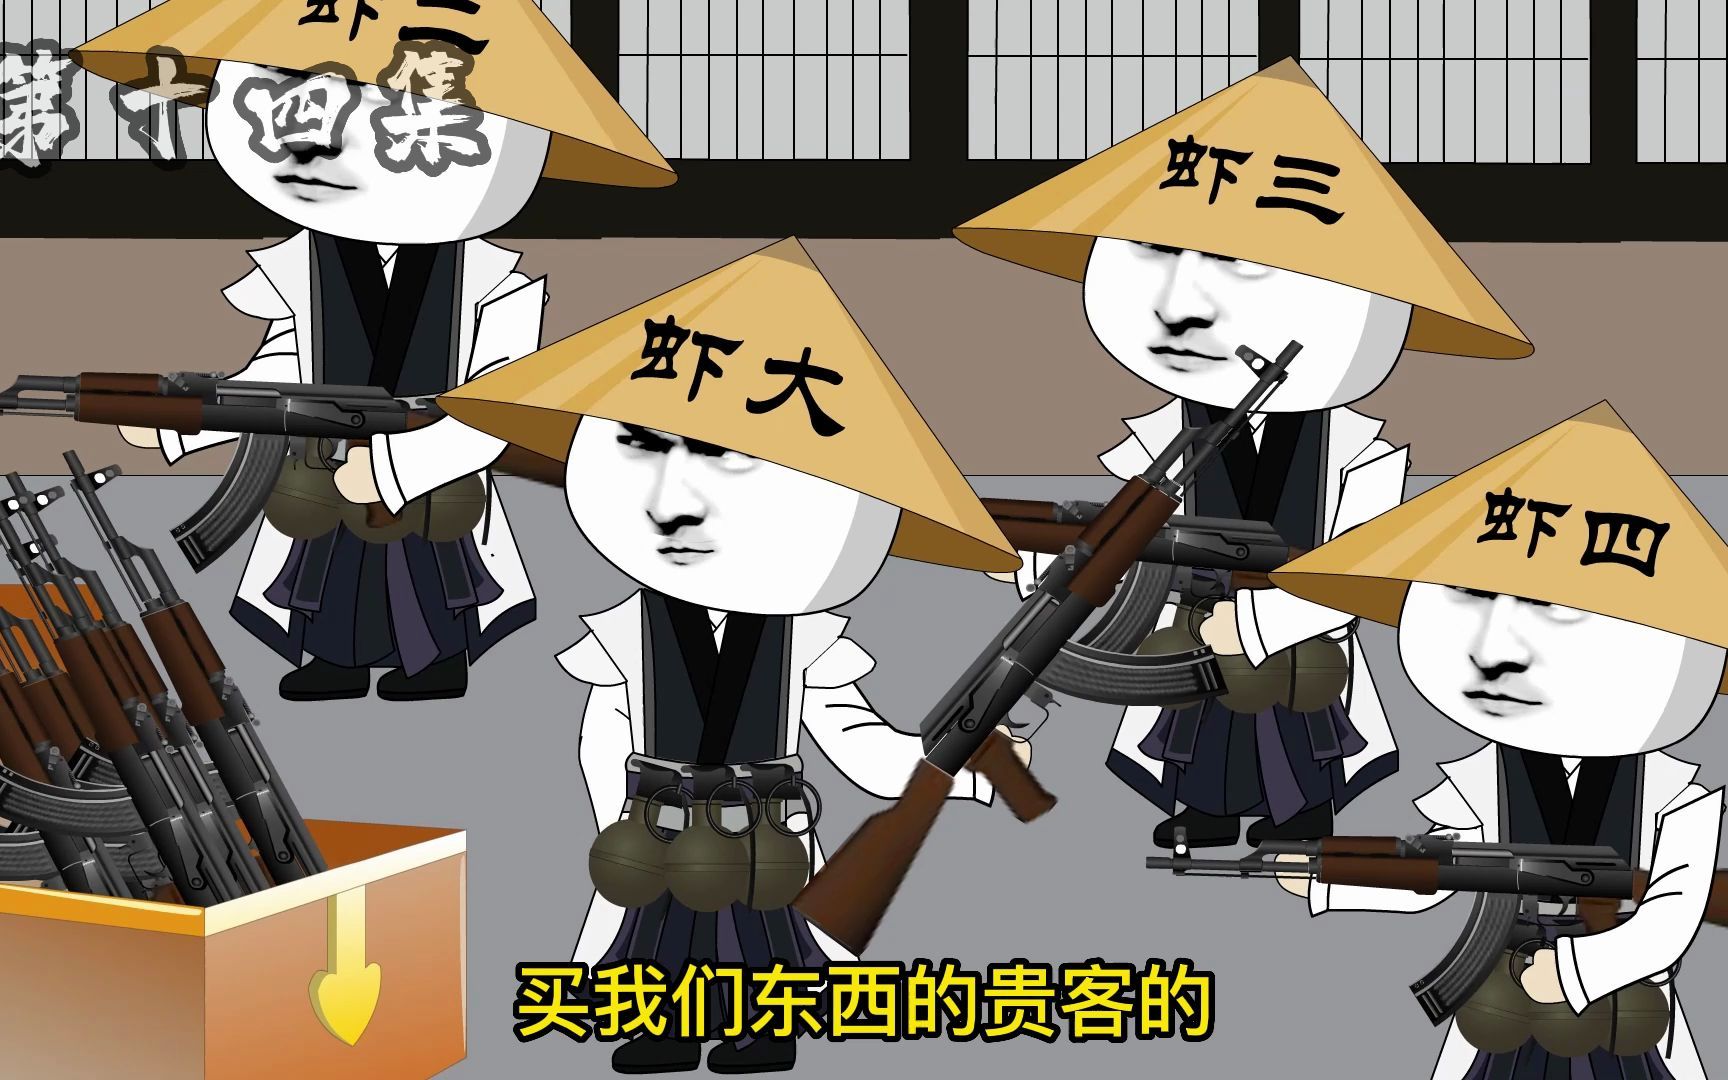 《我在大唐卖军火》第28集-虾仁饭动画-虾仁饭动画-哔哩哔哩视频